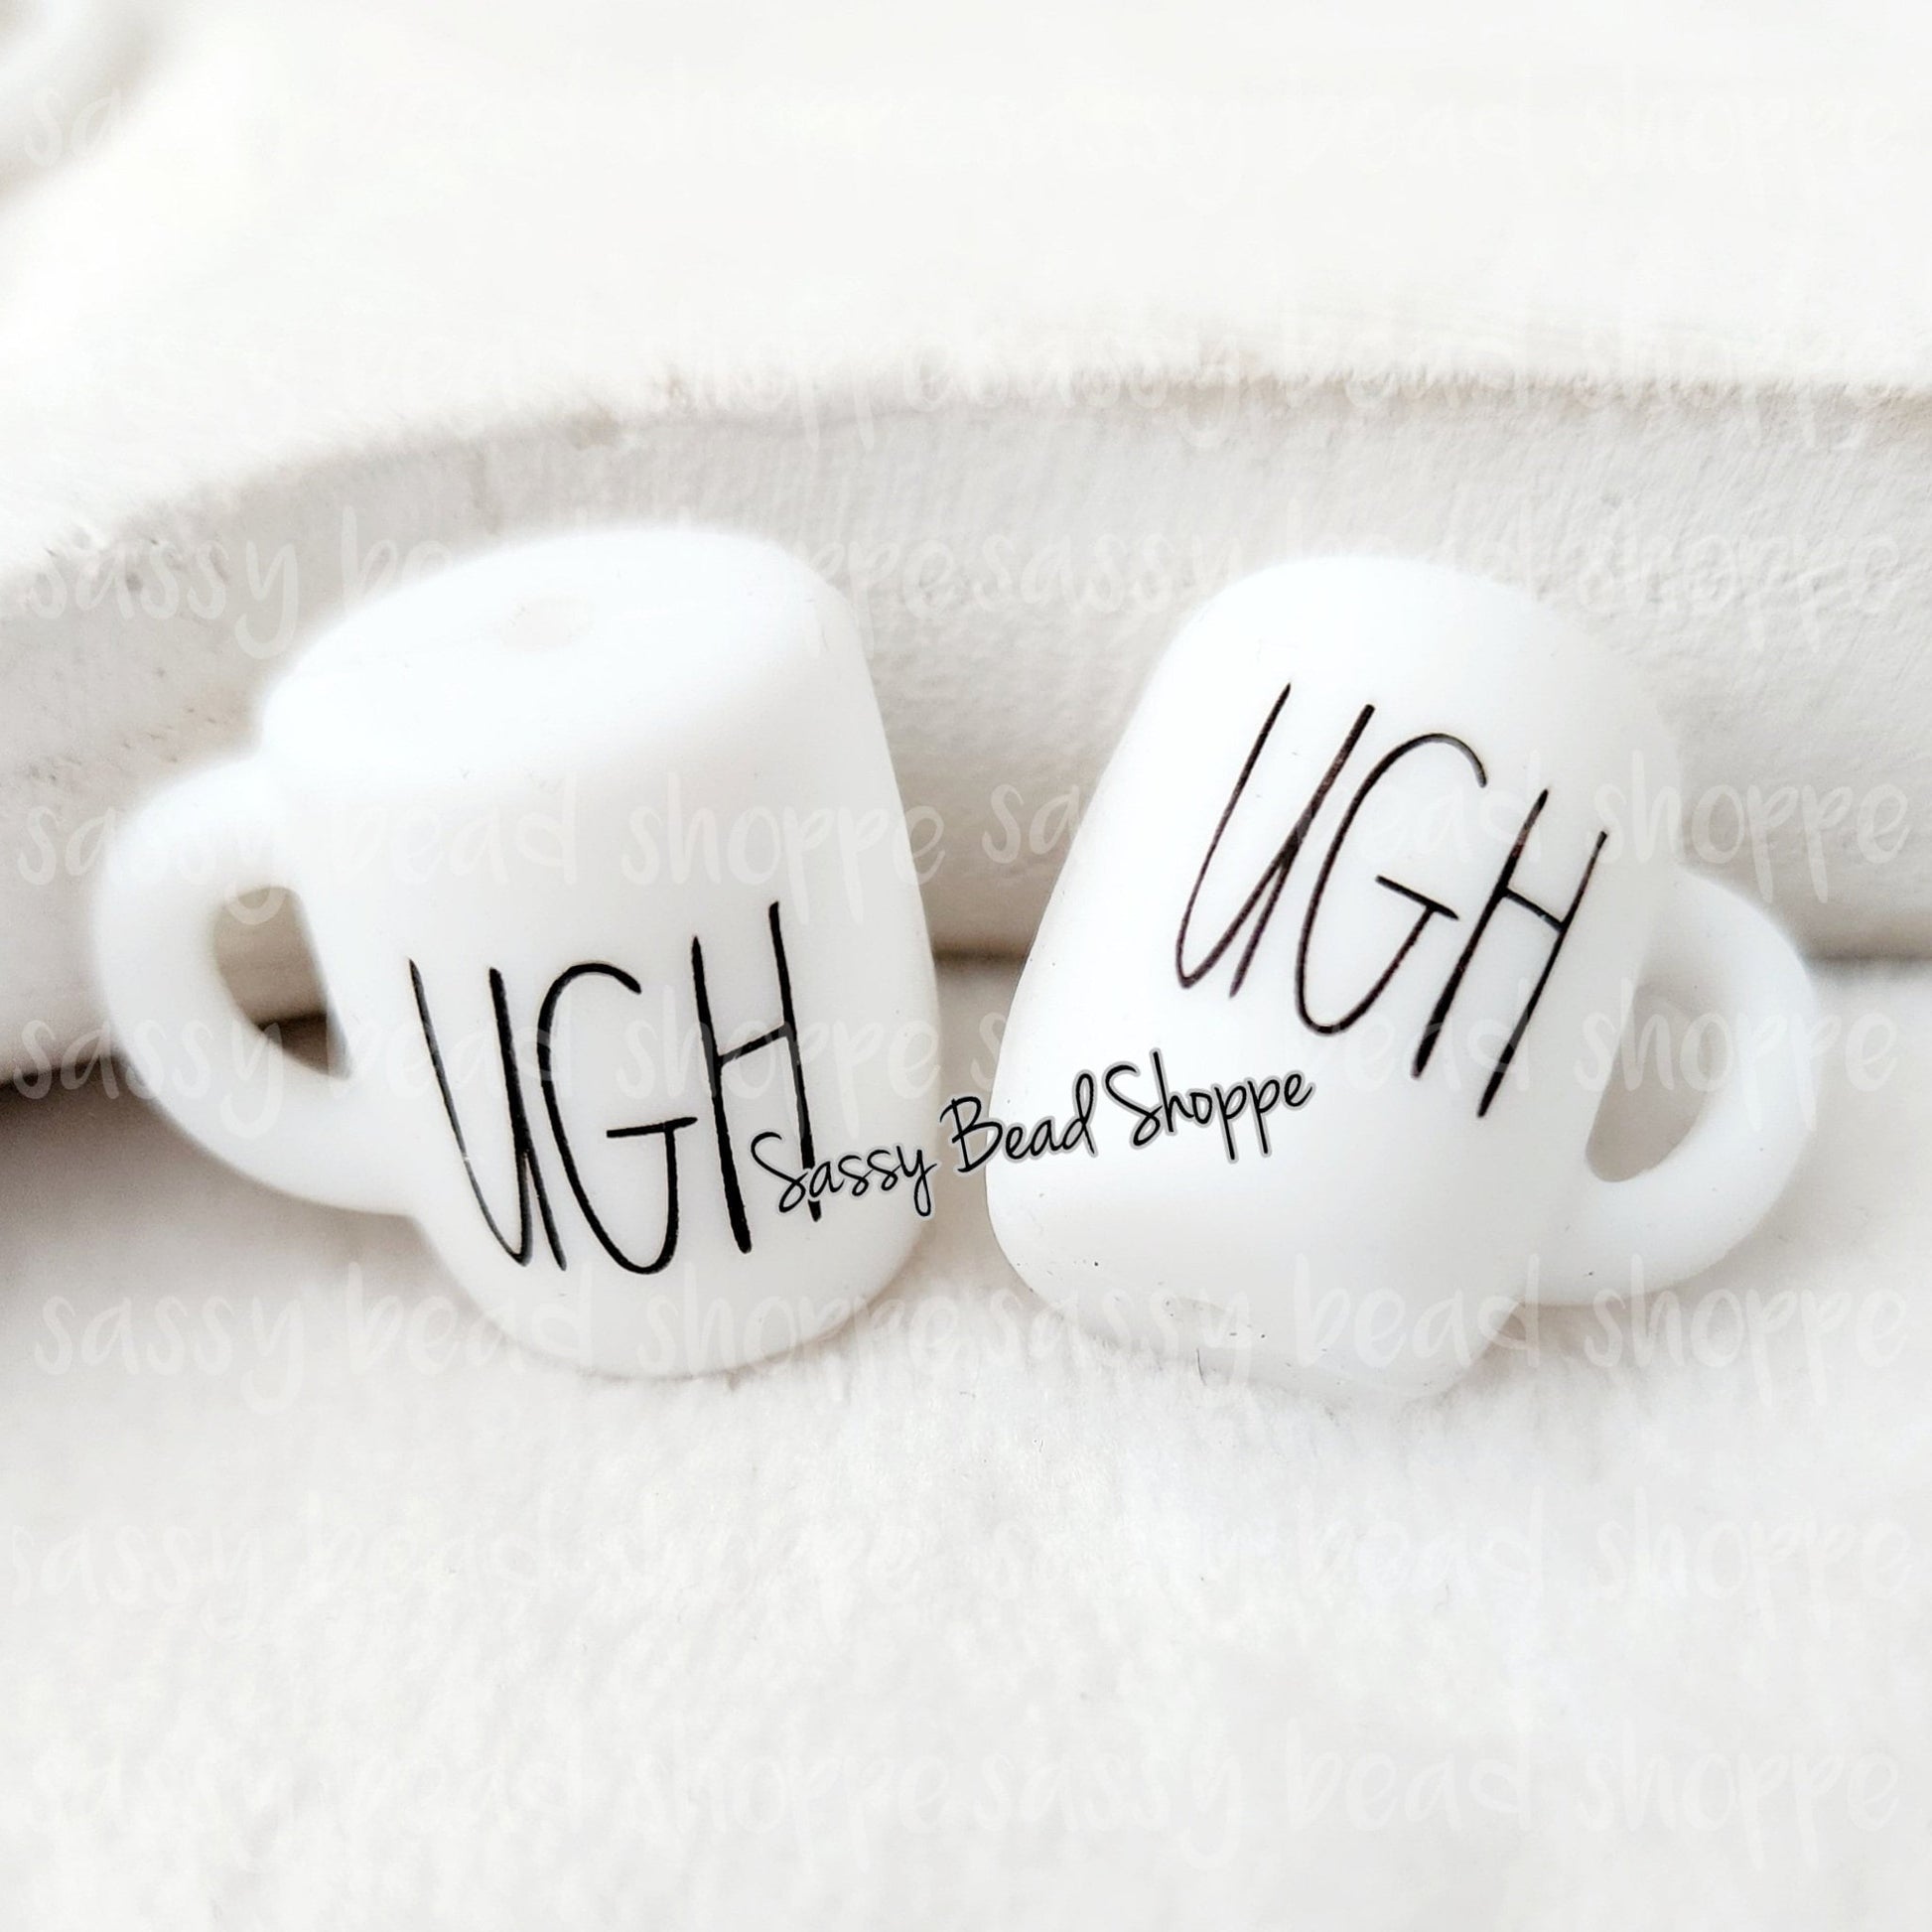 UGH Coffee Mug Beads